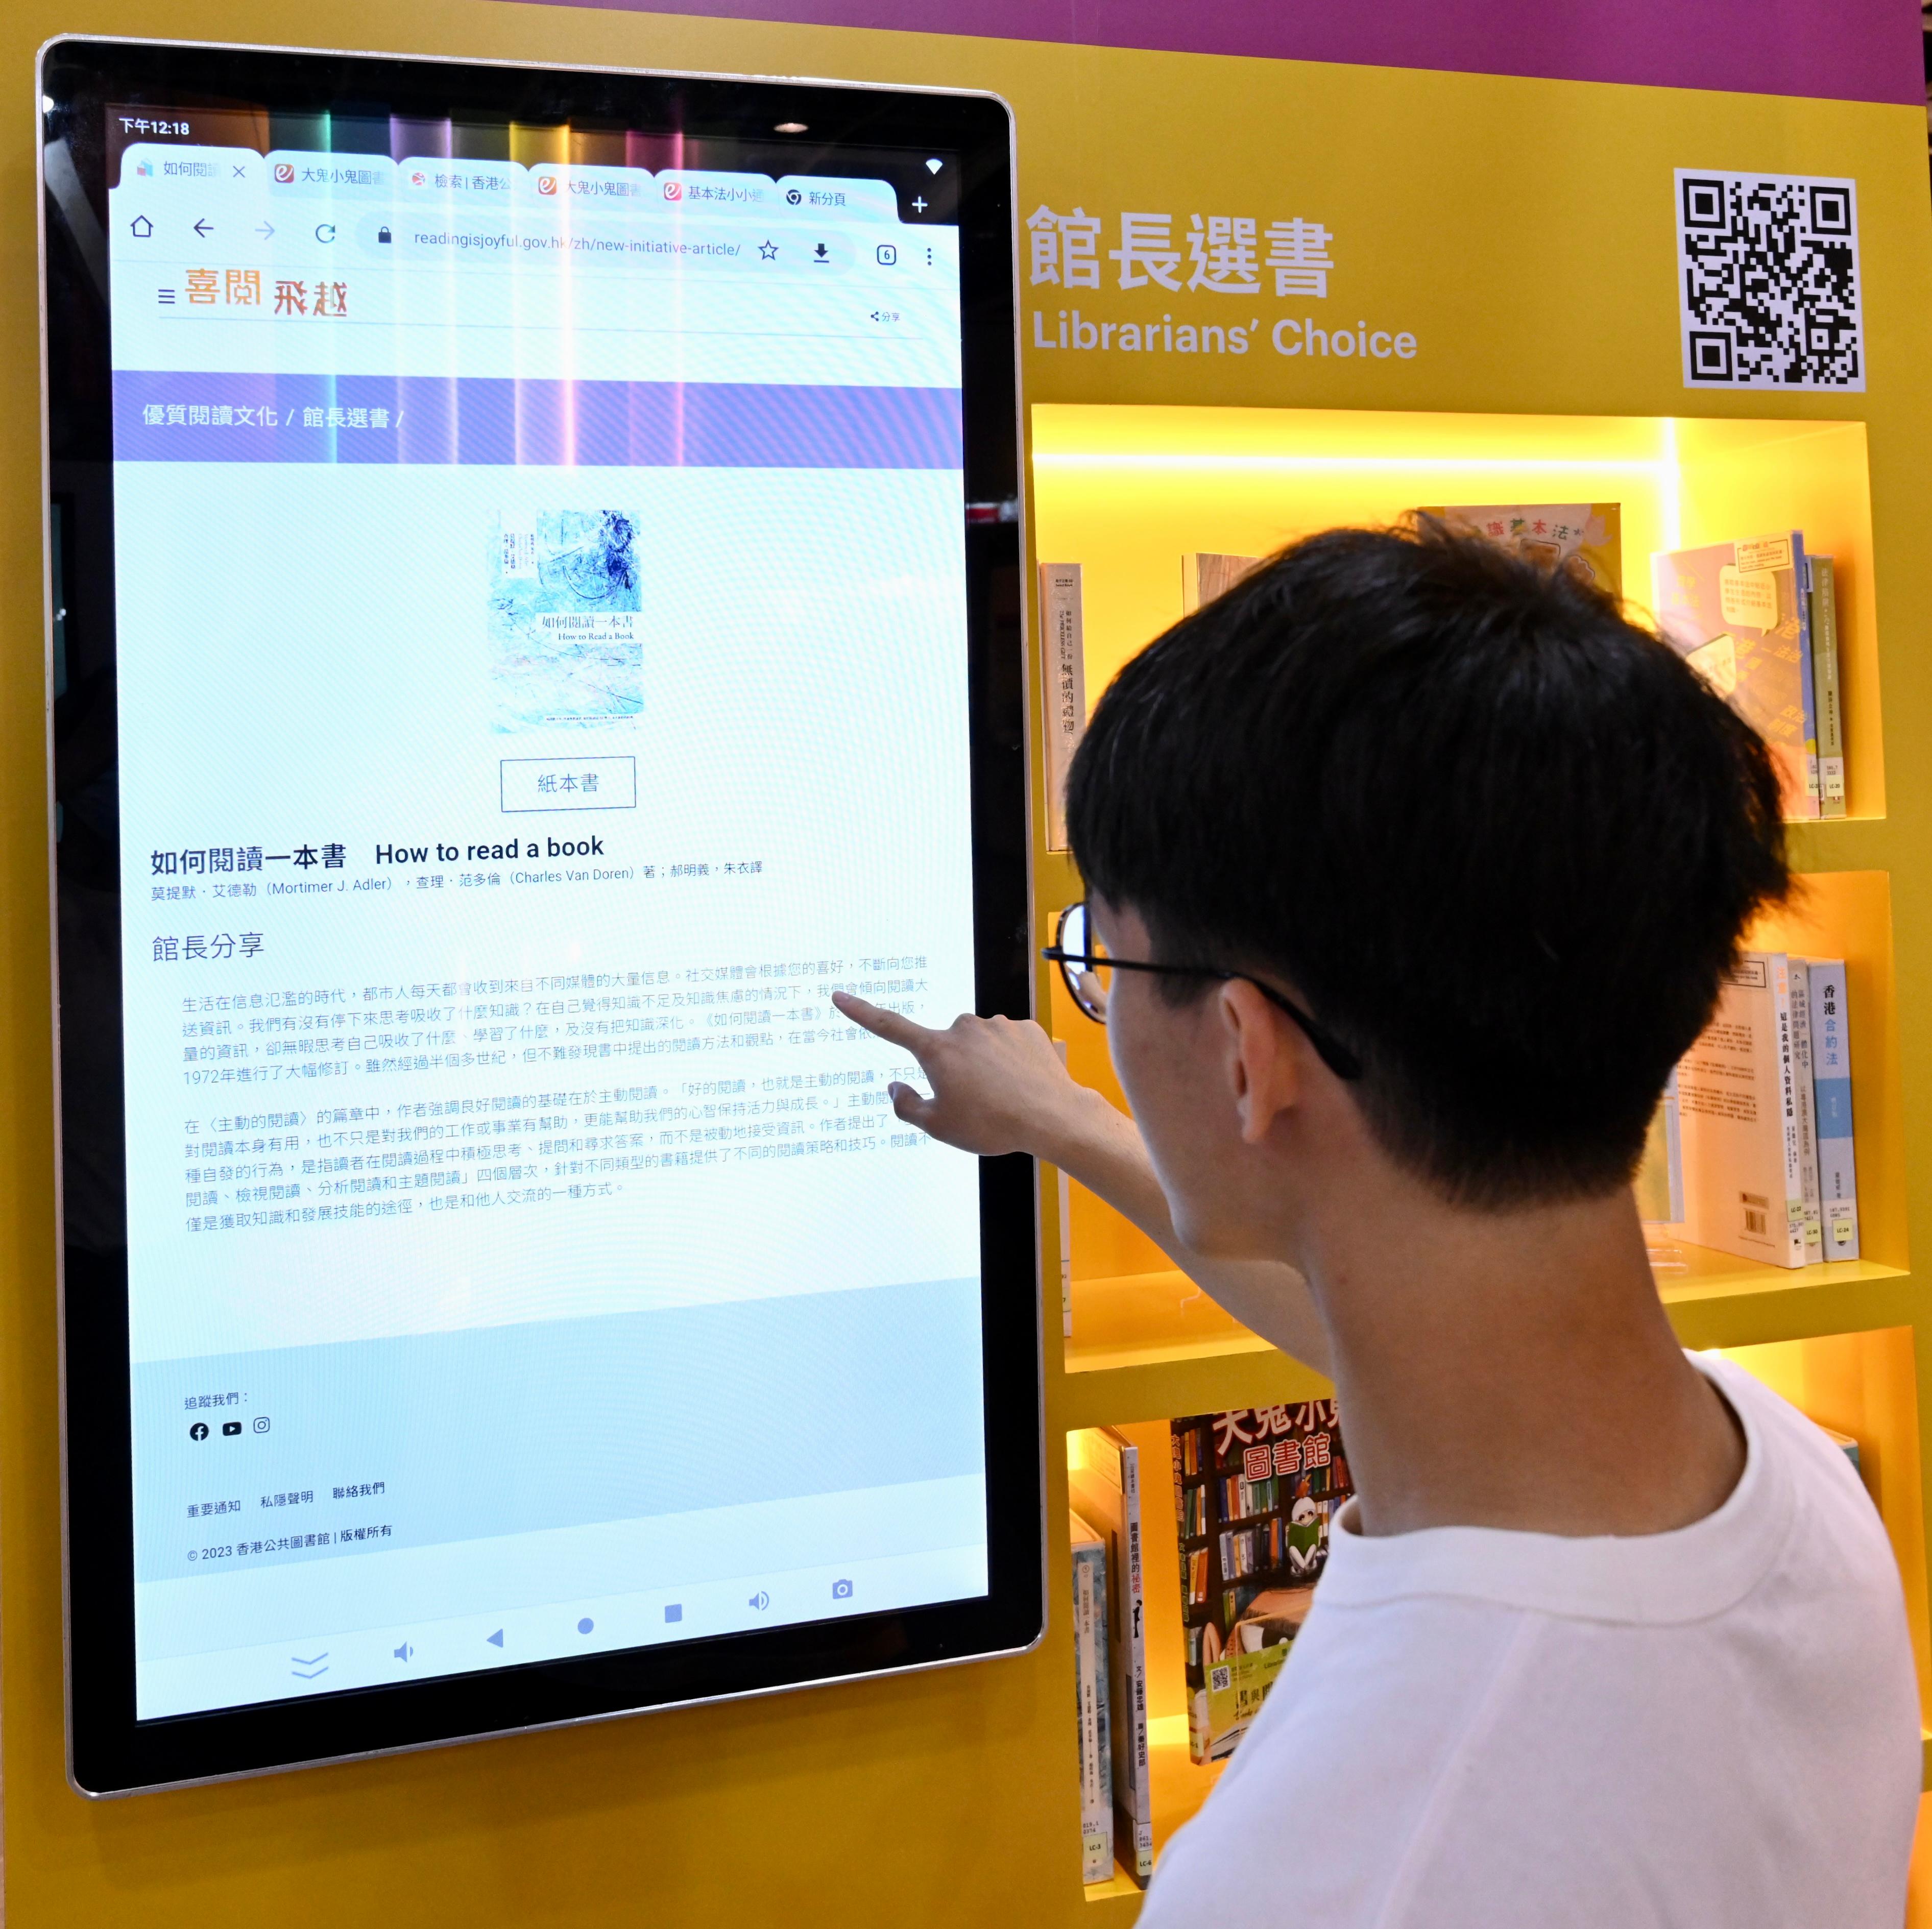 香港公共圖書館今日（七月十九日）至七月二十五日於香港書展設置攤位，向市民介紹圖書館豐富的電子資源館藏及推廣優質閱讀文化。市民可在攤位的「館長選書」專區閱覽圖書館館長推介的優質讀物及他們的讀後感，發掘不同主題的好書。